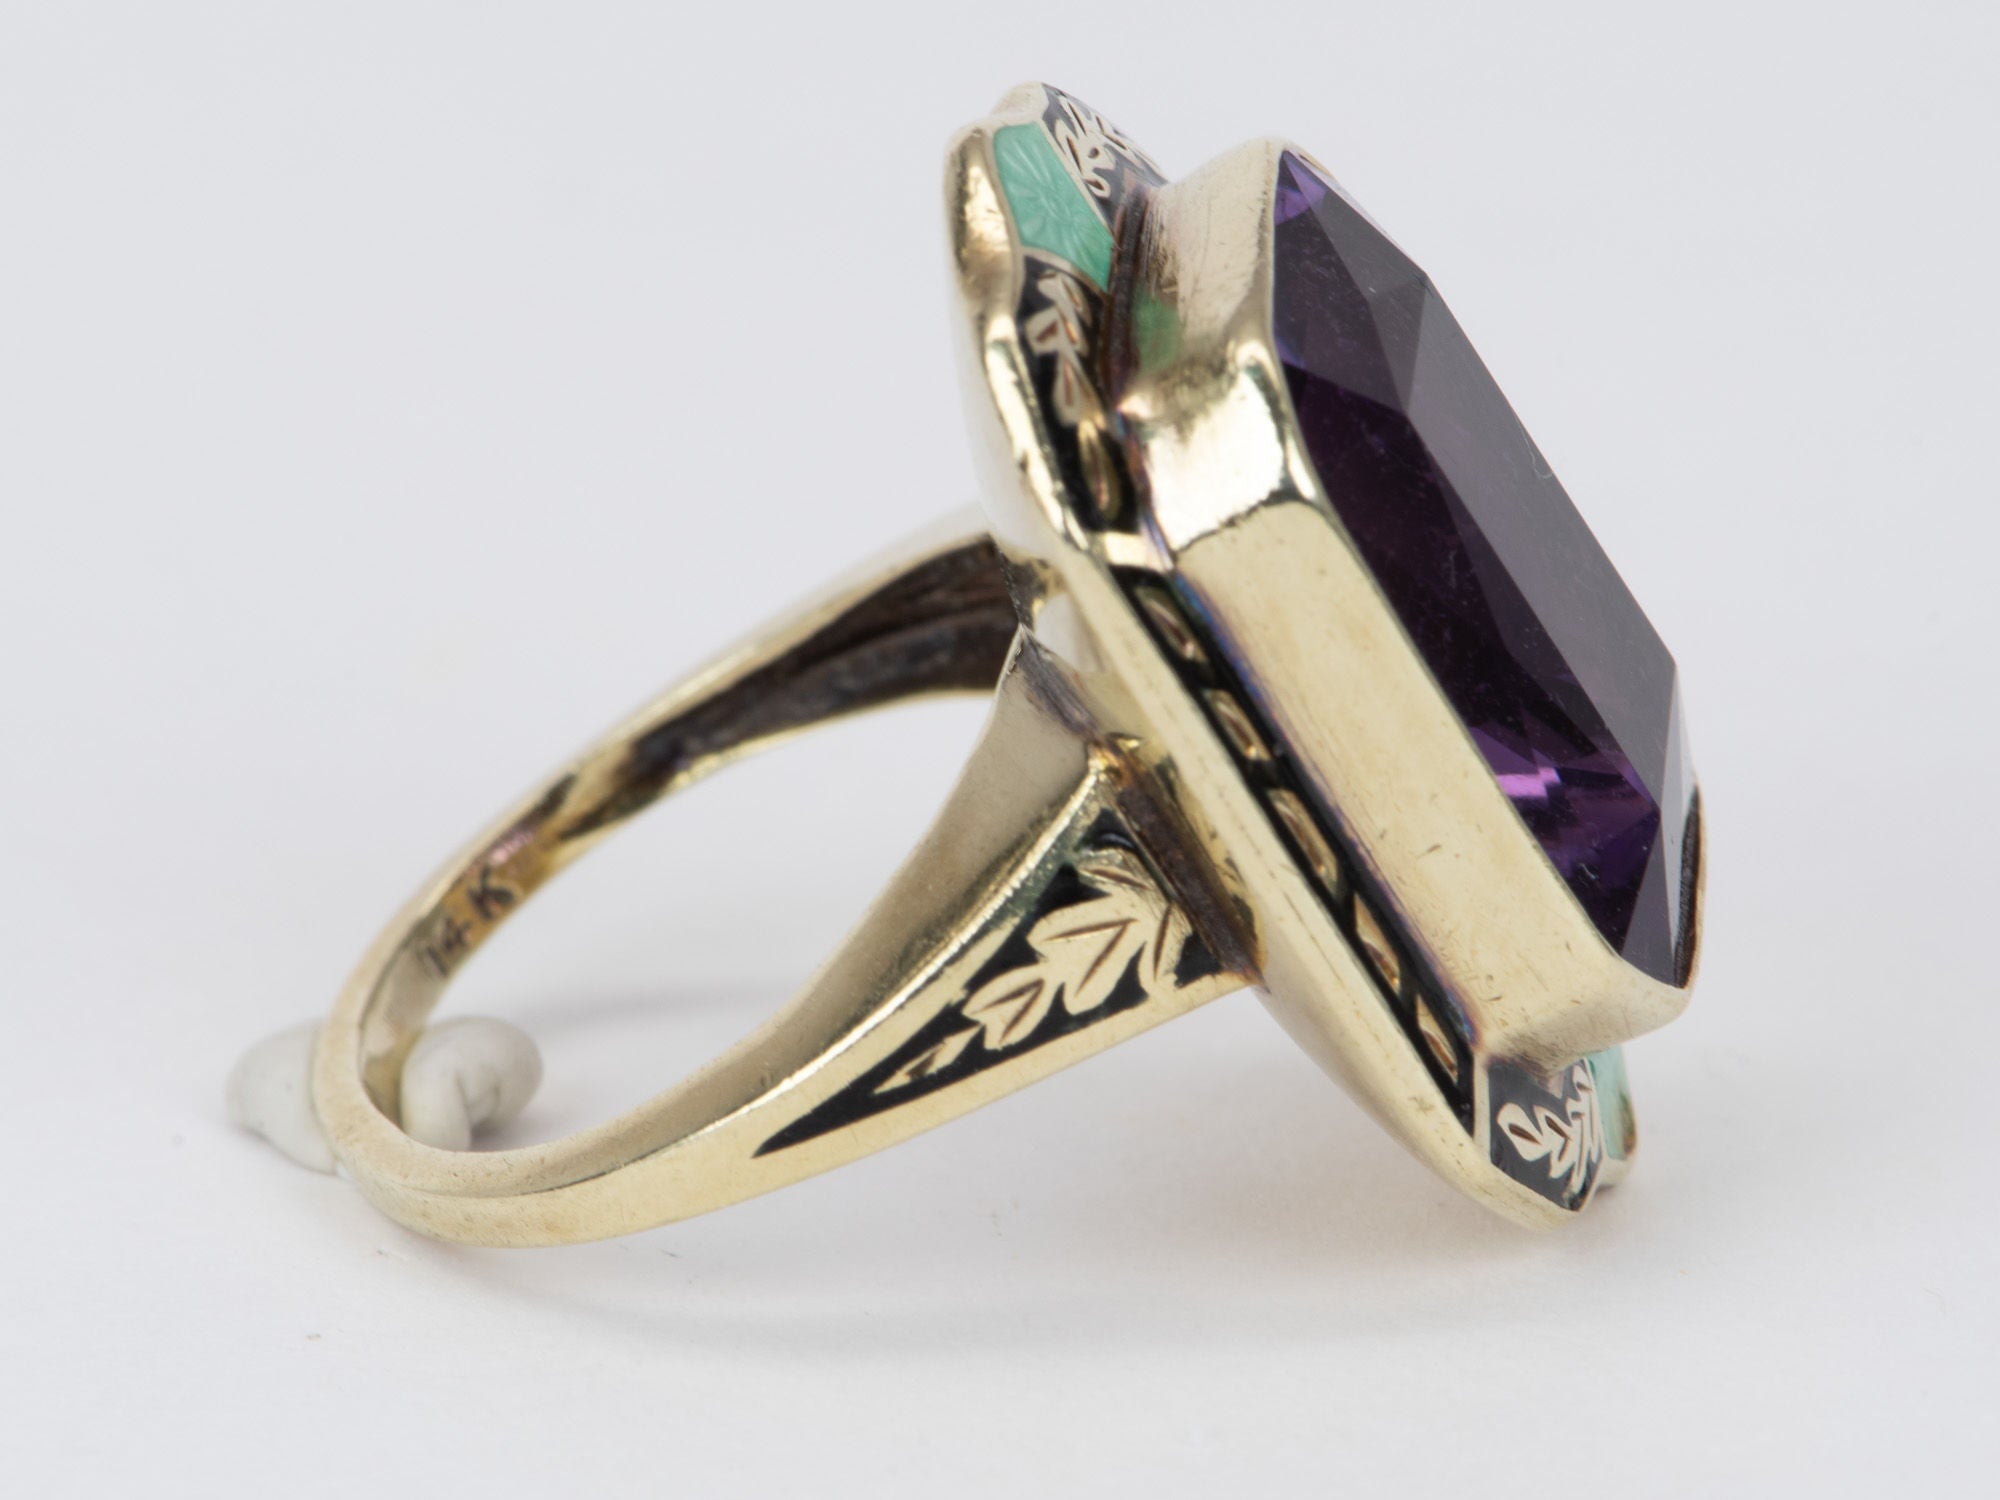 Aurora Gold Ring Designer 8.93g - Statement Amethyst Enamel Vintage with V10 Details 14K